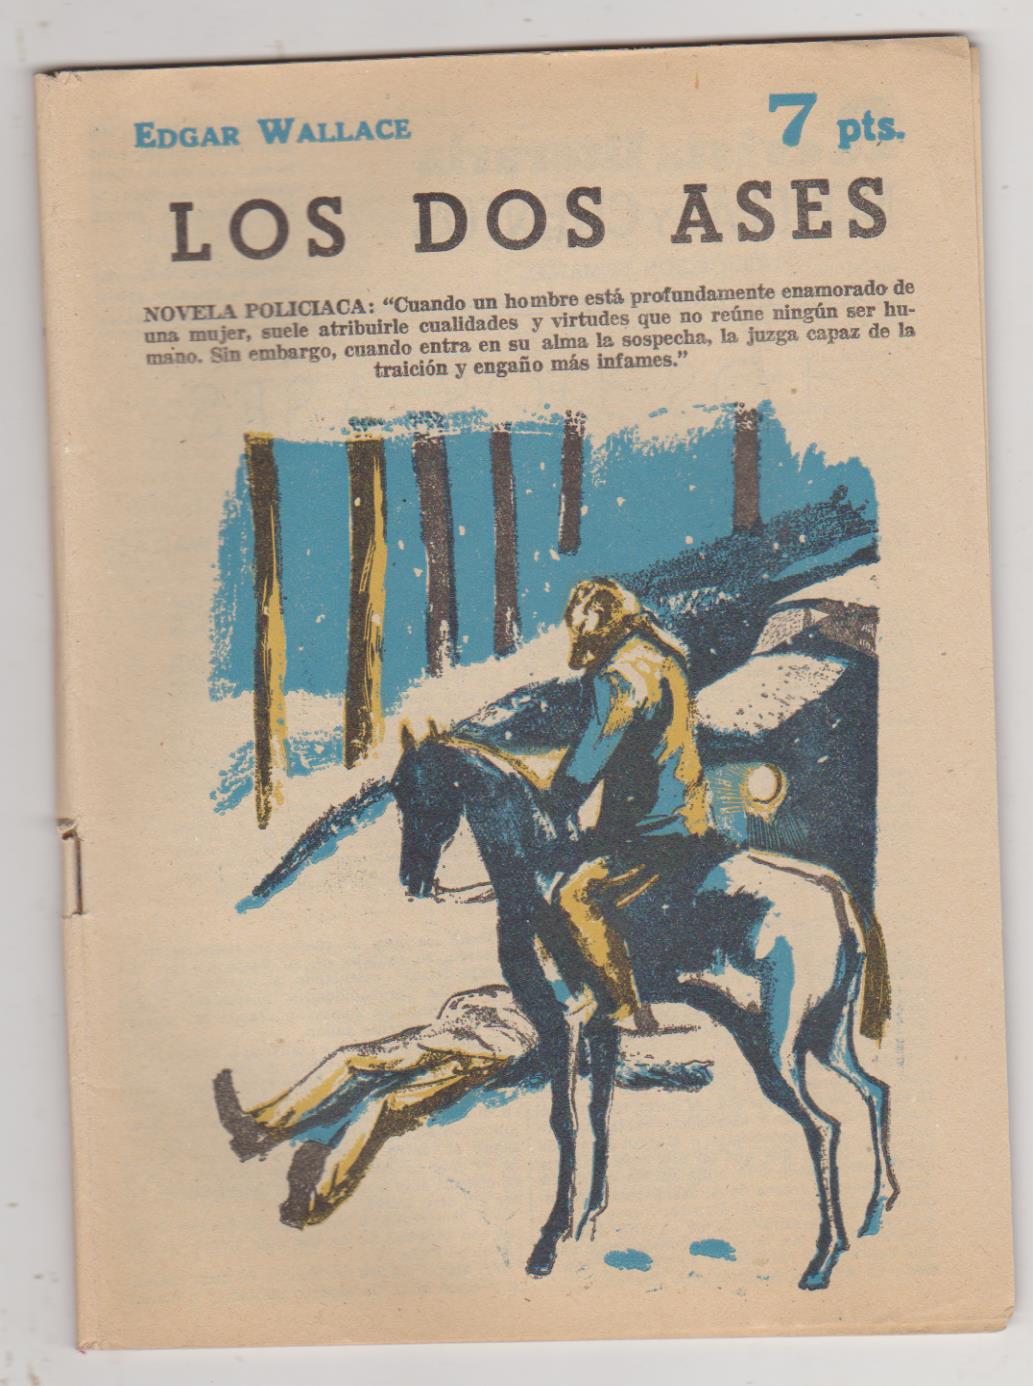 Revista Literaria nº 1703. Edgar Wallace. Los dos ases. Año 1963